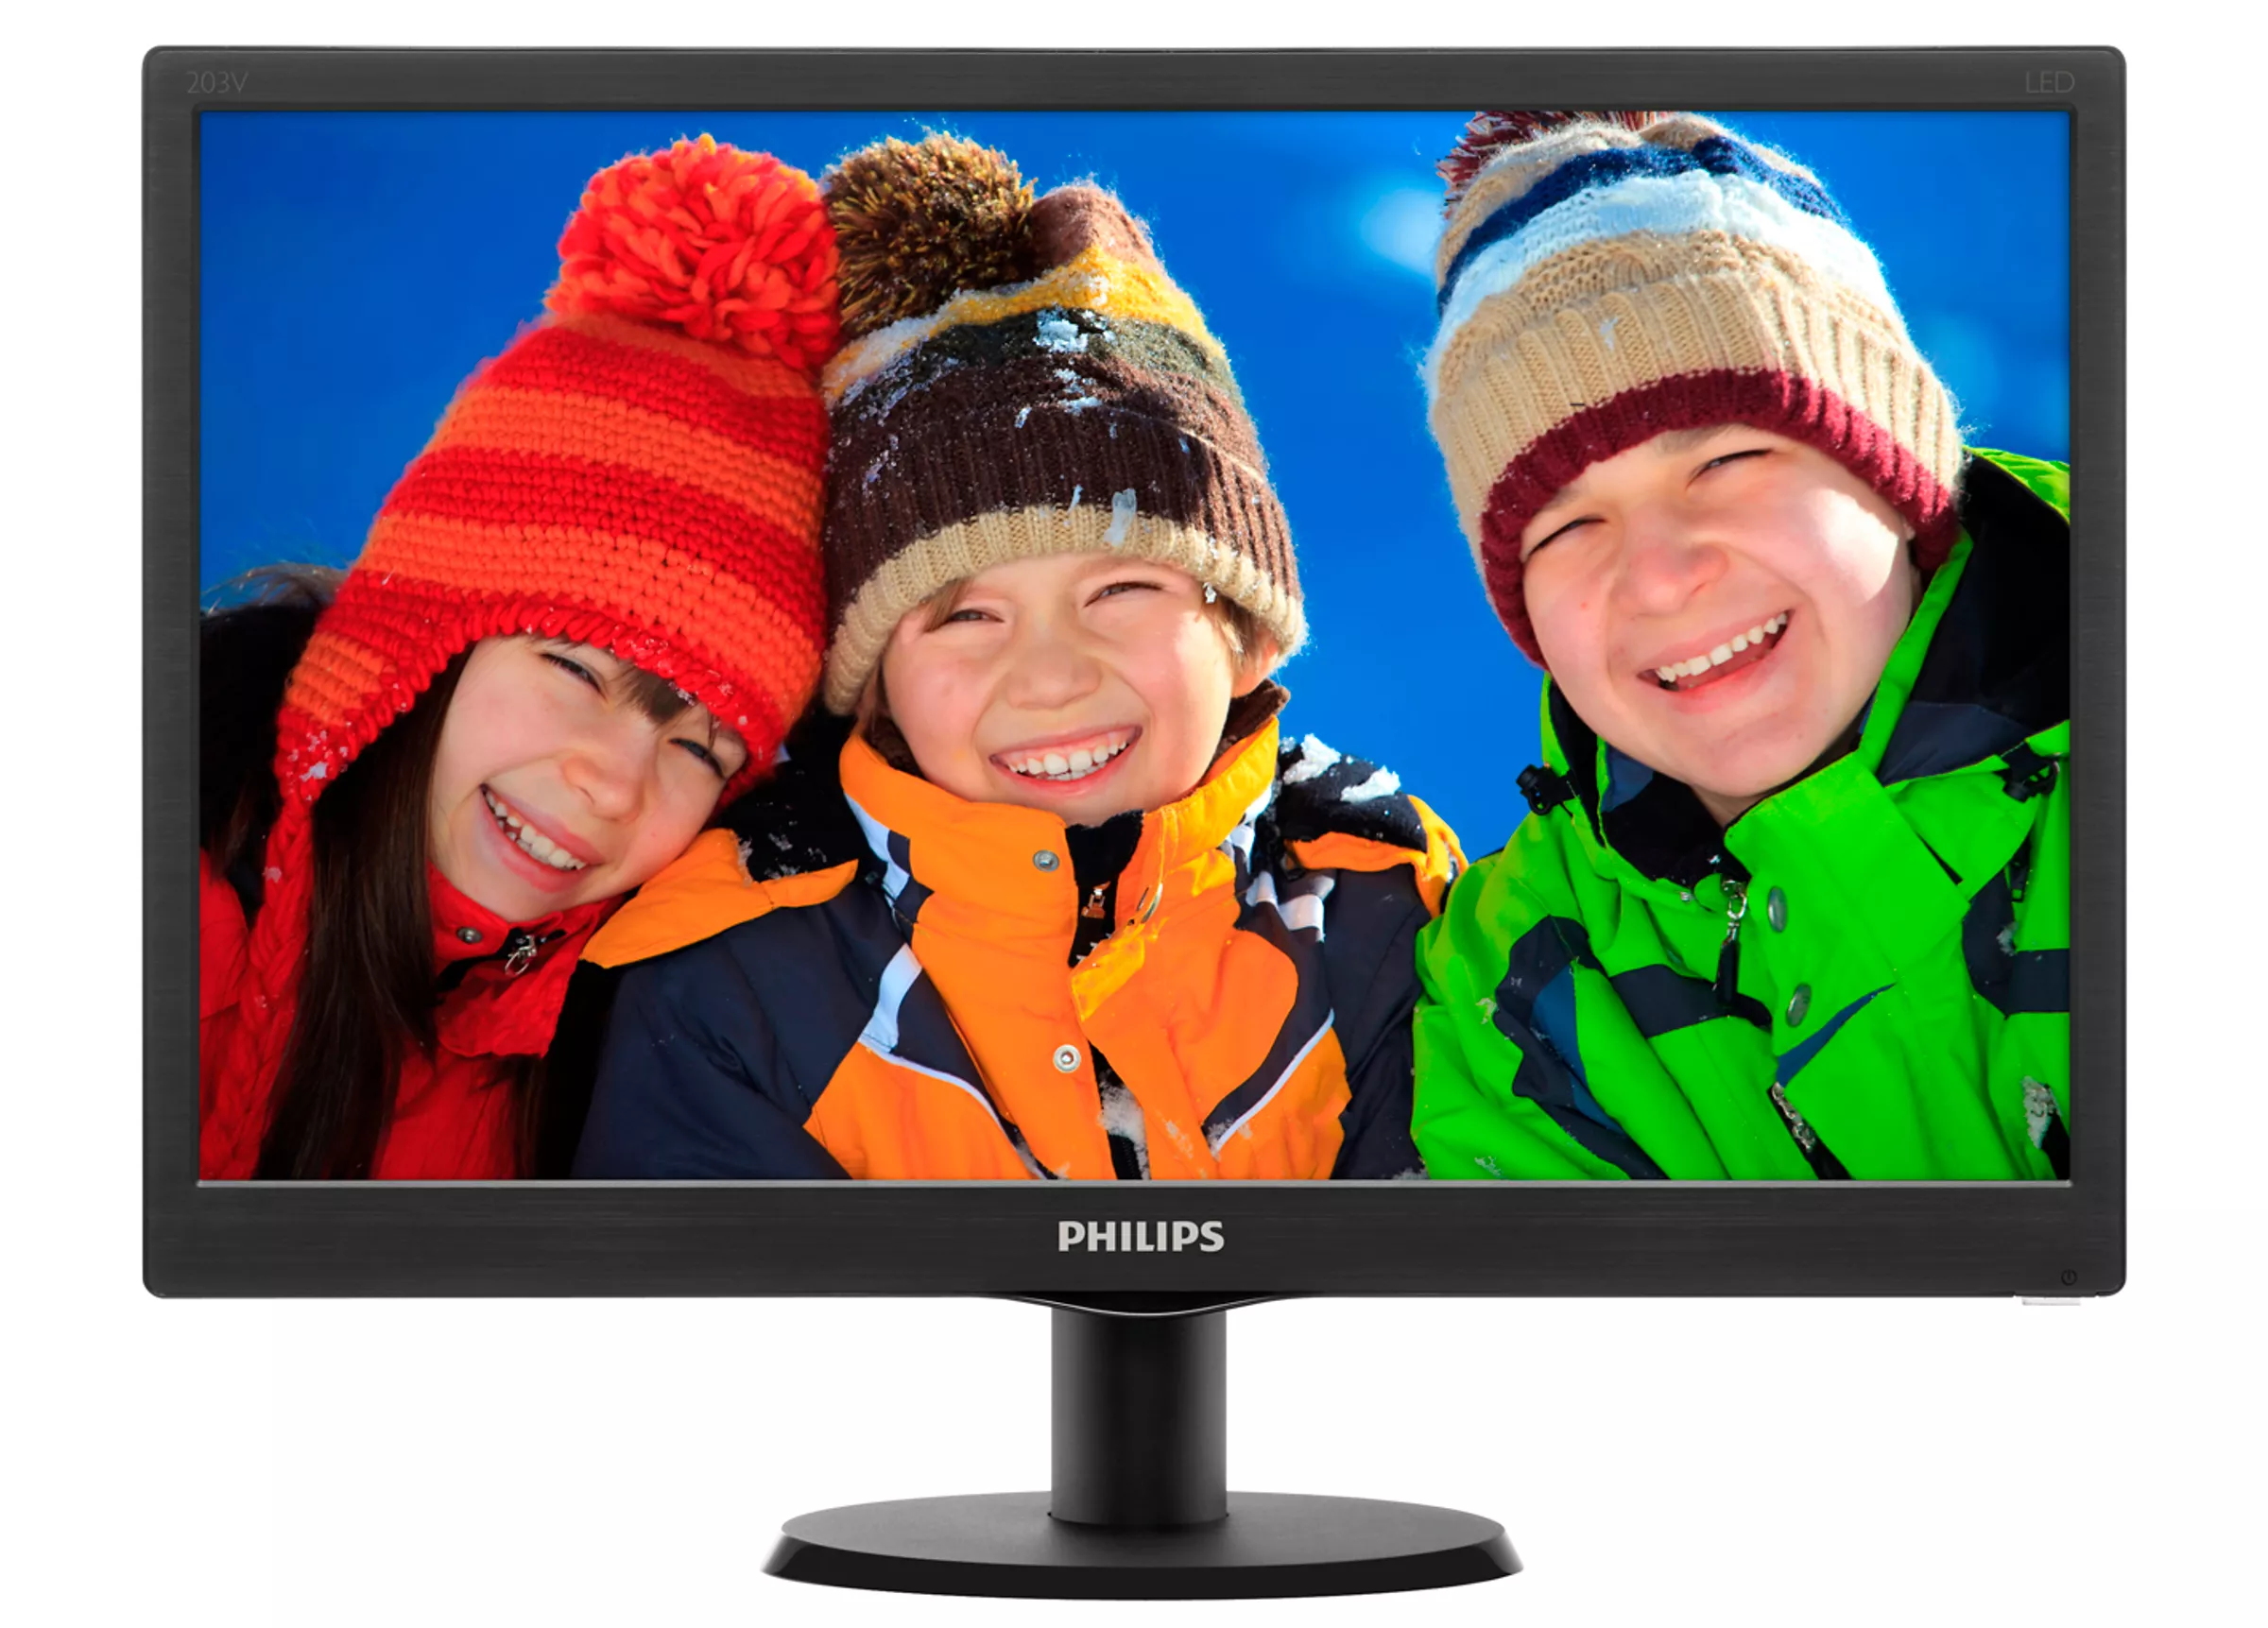 Vente Philips V Line Moniteur LCD avec SmartControl Lite Philips au meilleur prix - visuel 2